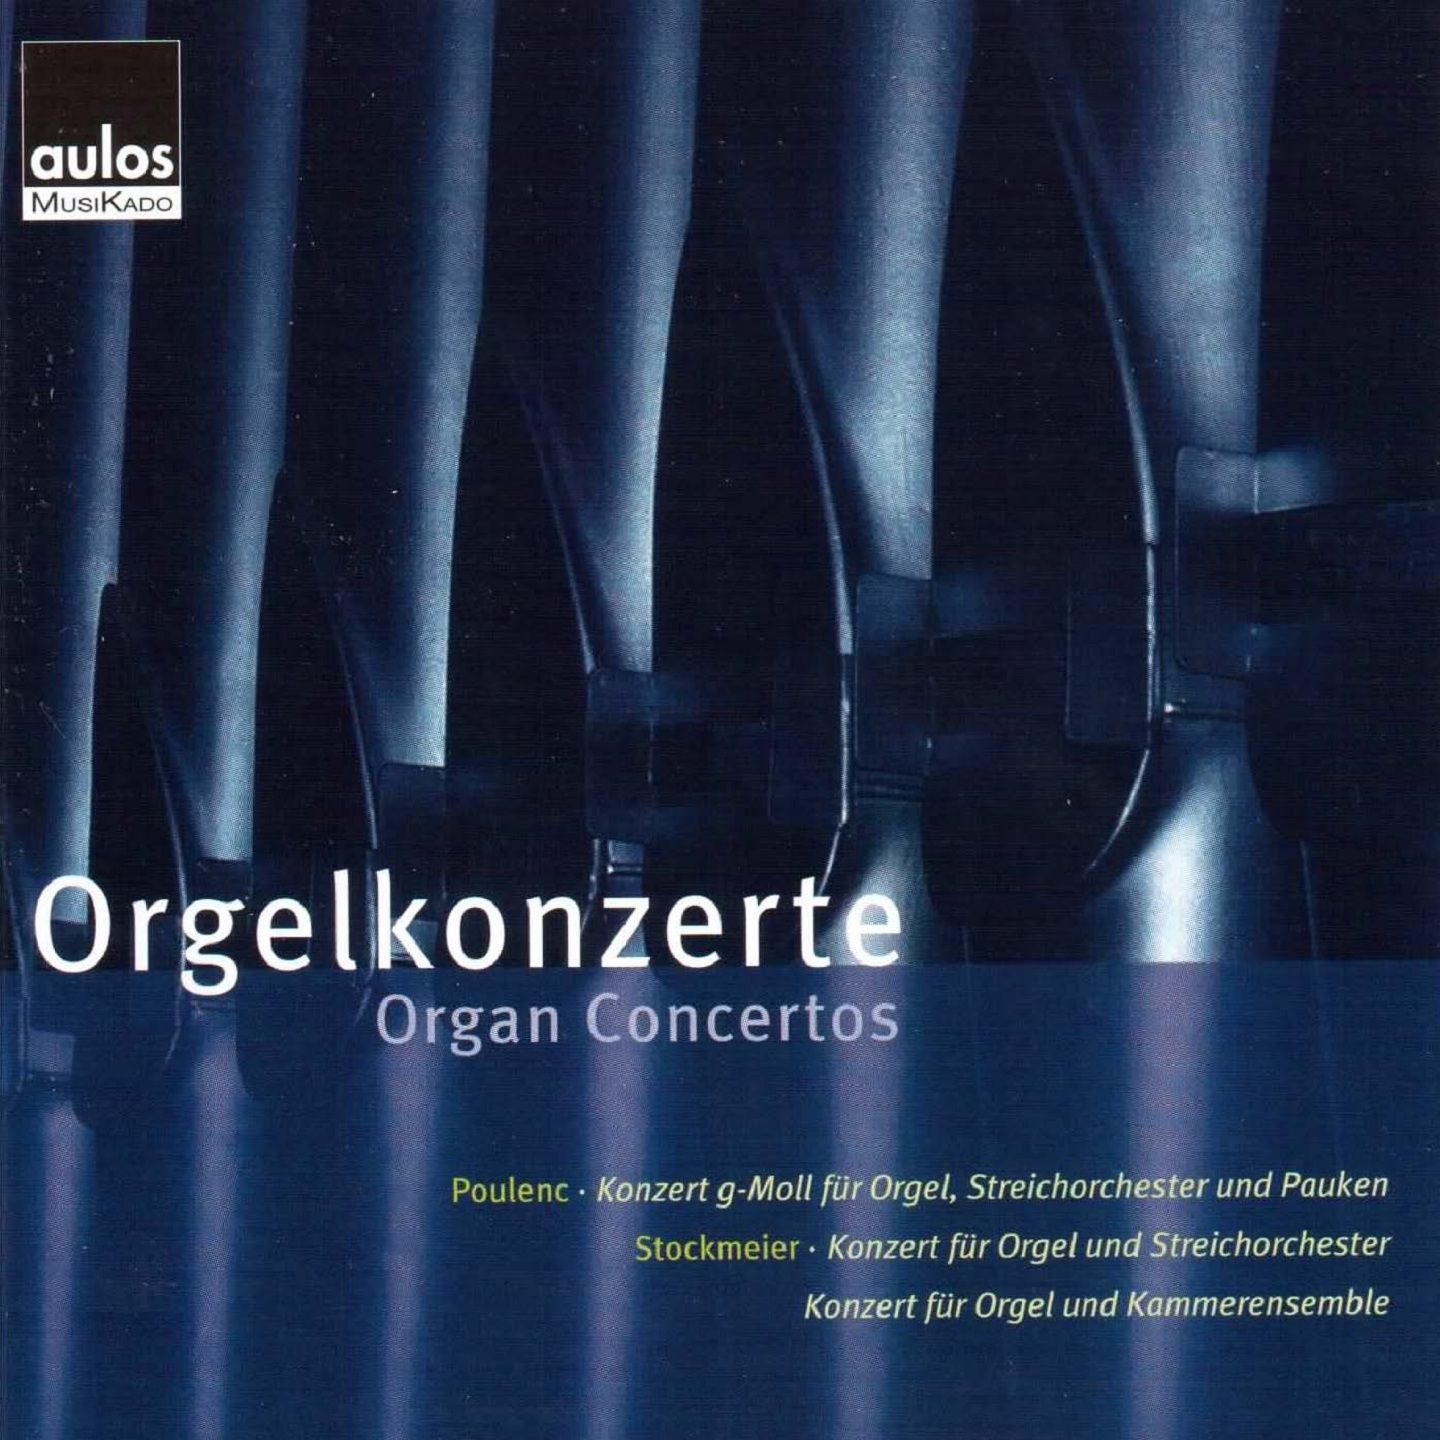 Konzert fü r Orgel, Streichorchester und Pauken in G Minor, FP 93: I. Andante  Allegro giocoso